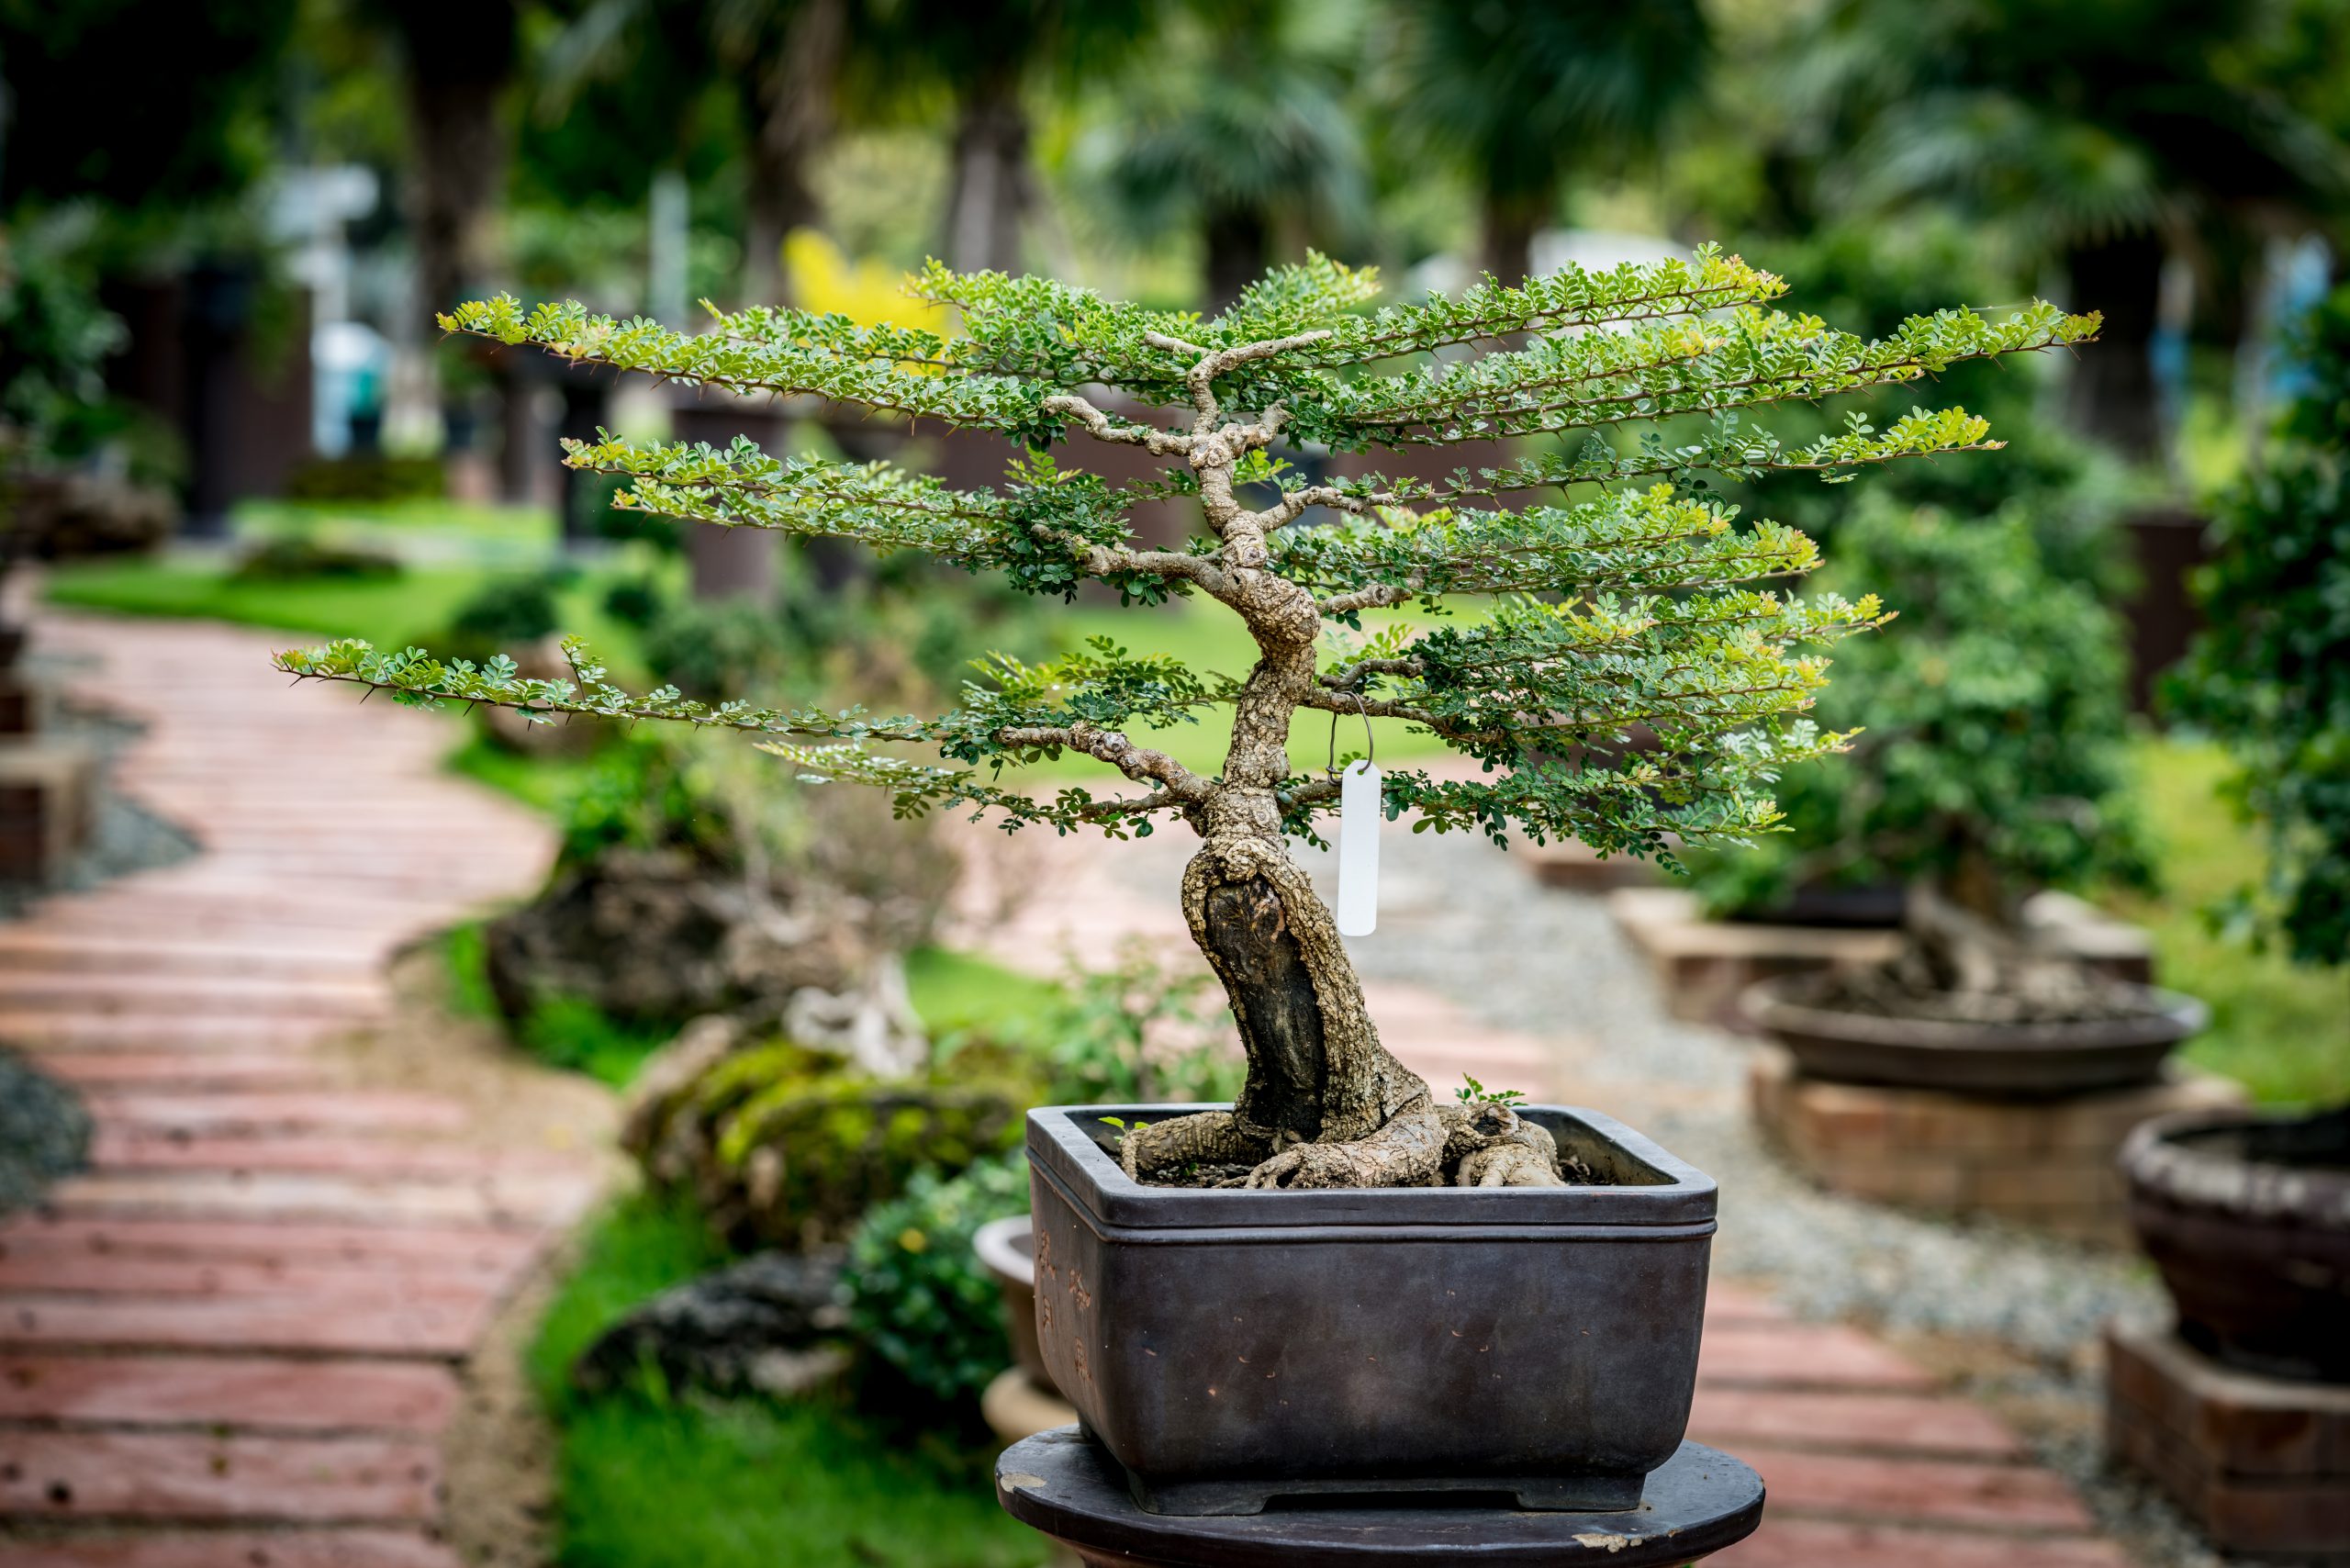 Chia sẻ cách chọn đất trồng cây bonsai từ kinh nghiệm thực tế 2